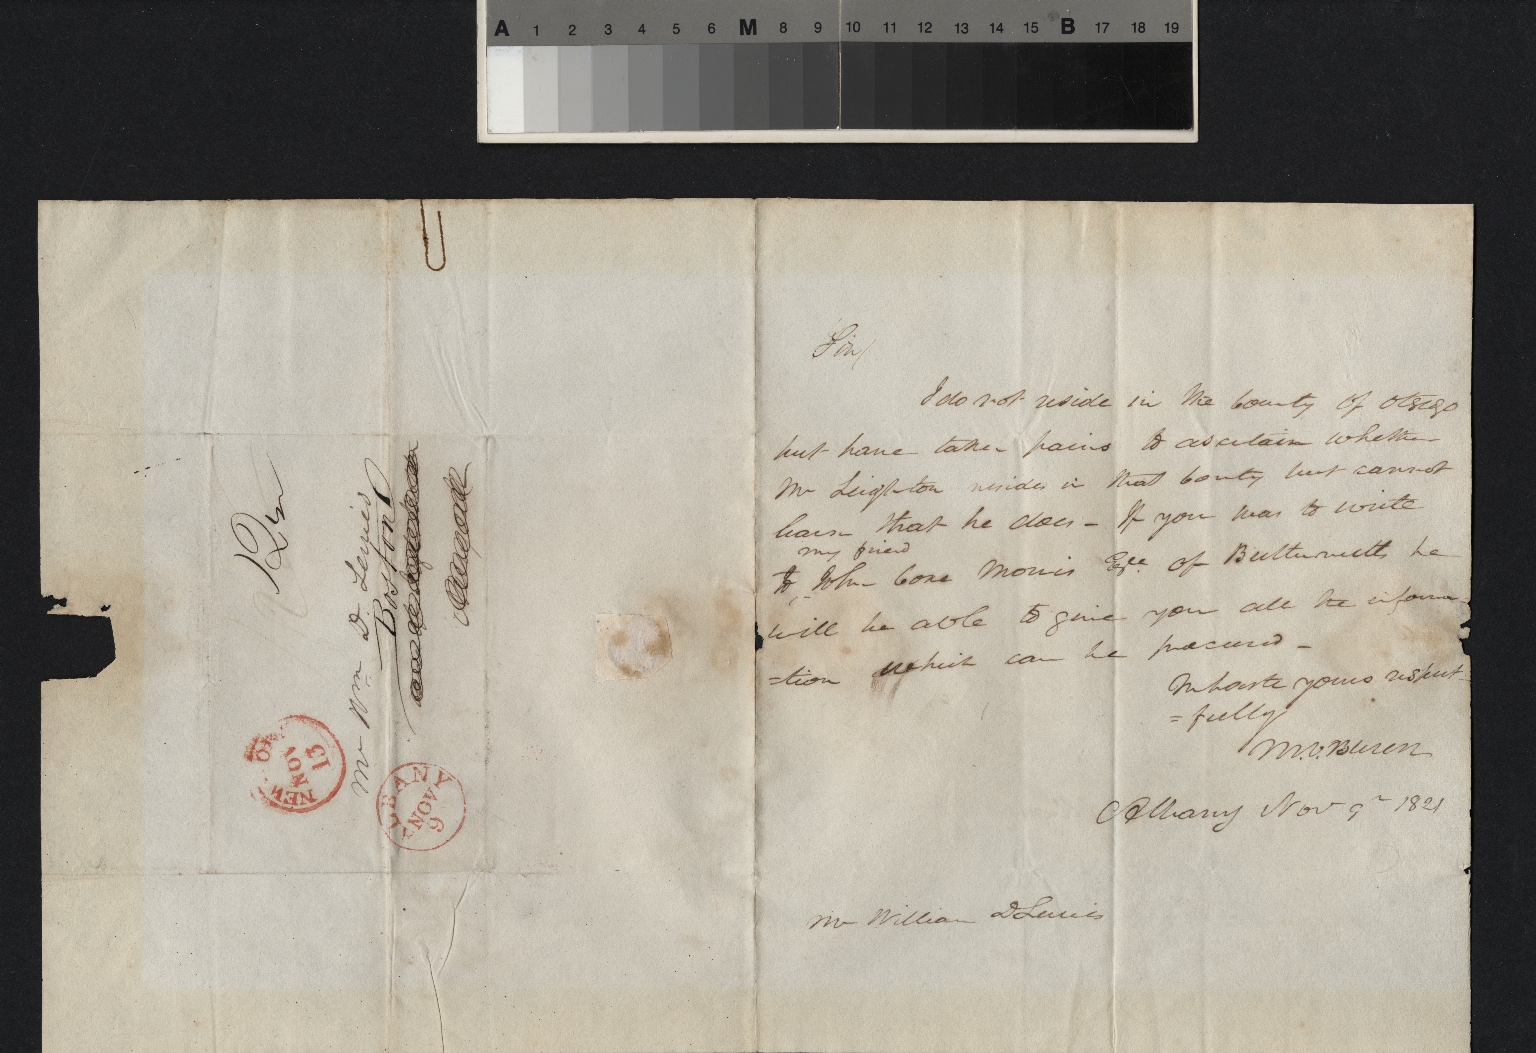 Van Buren letter to Lerries